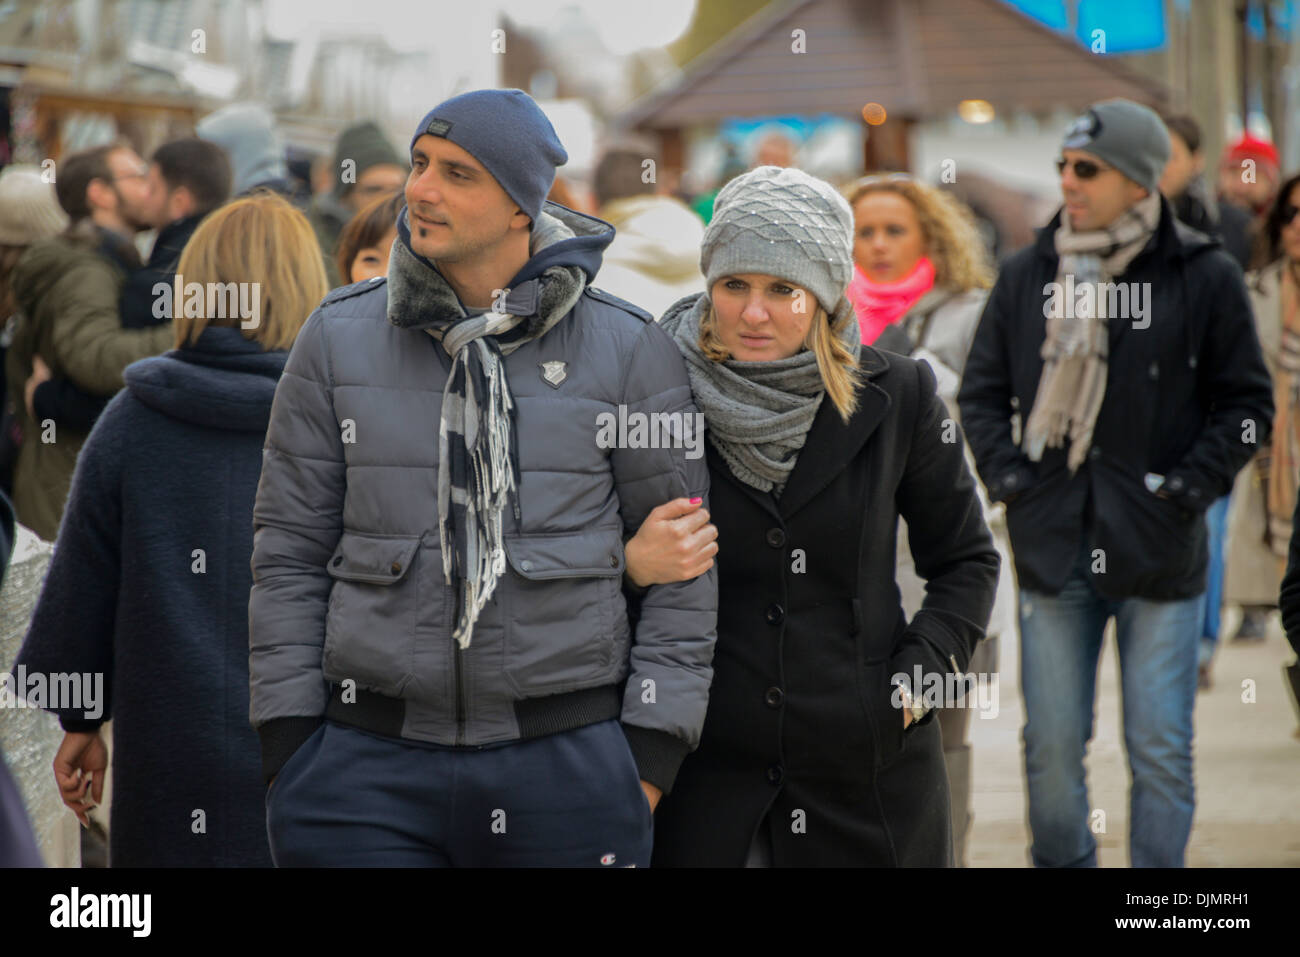 People at the Christmas market on the Avenue de Champs-Élysées in Paris Stock Photo